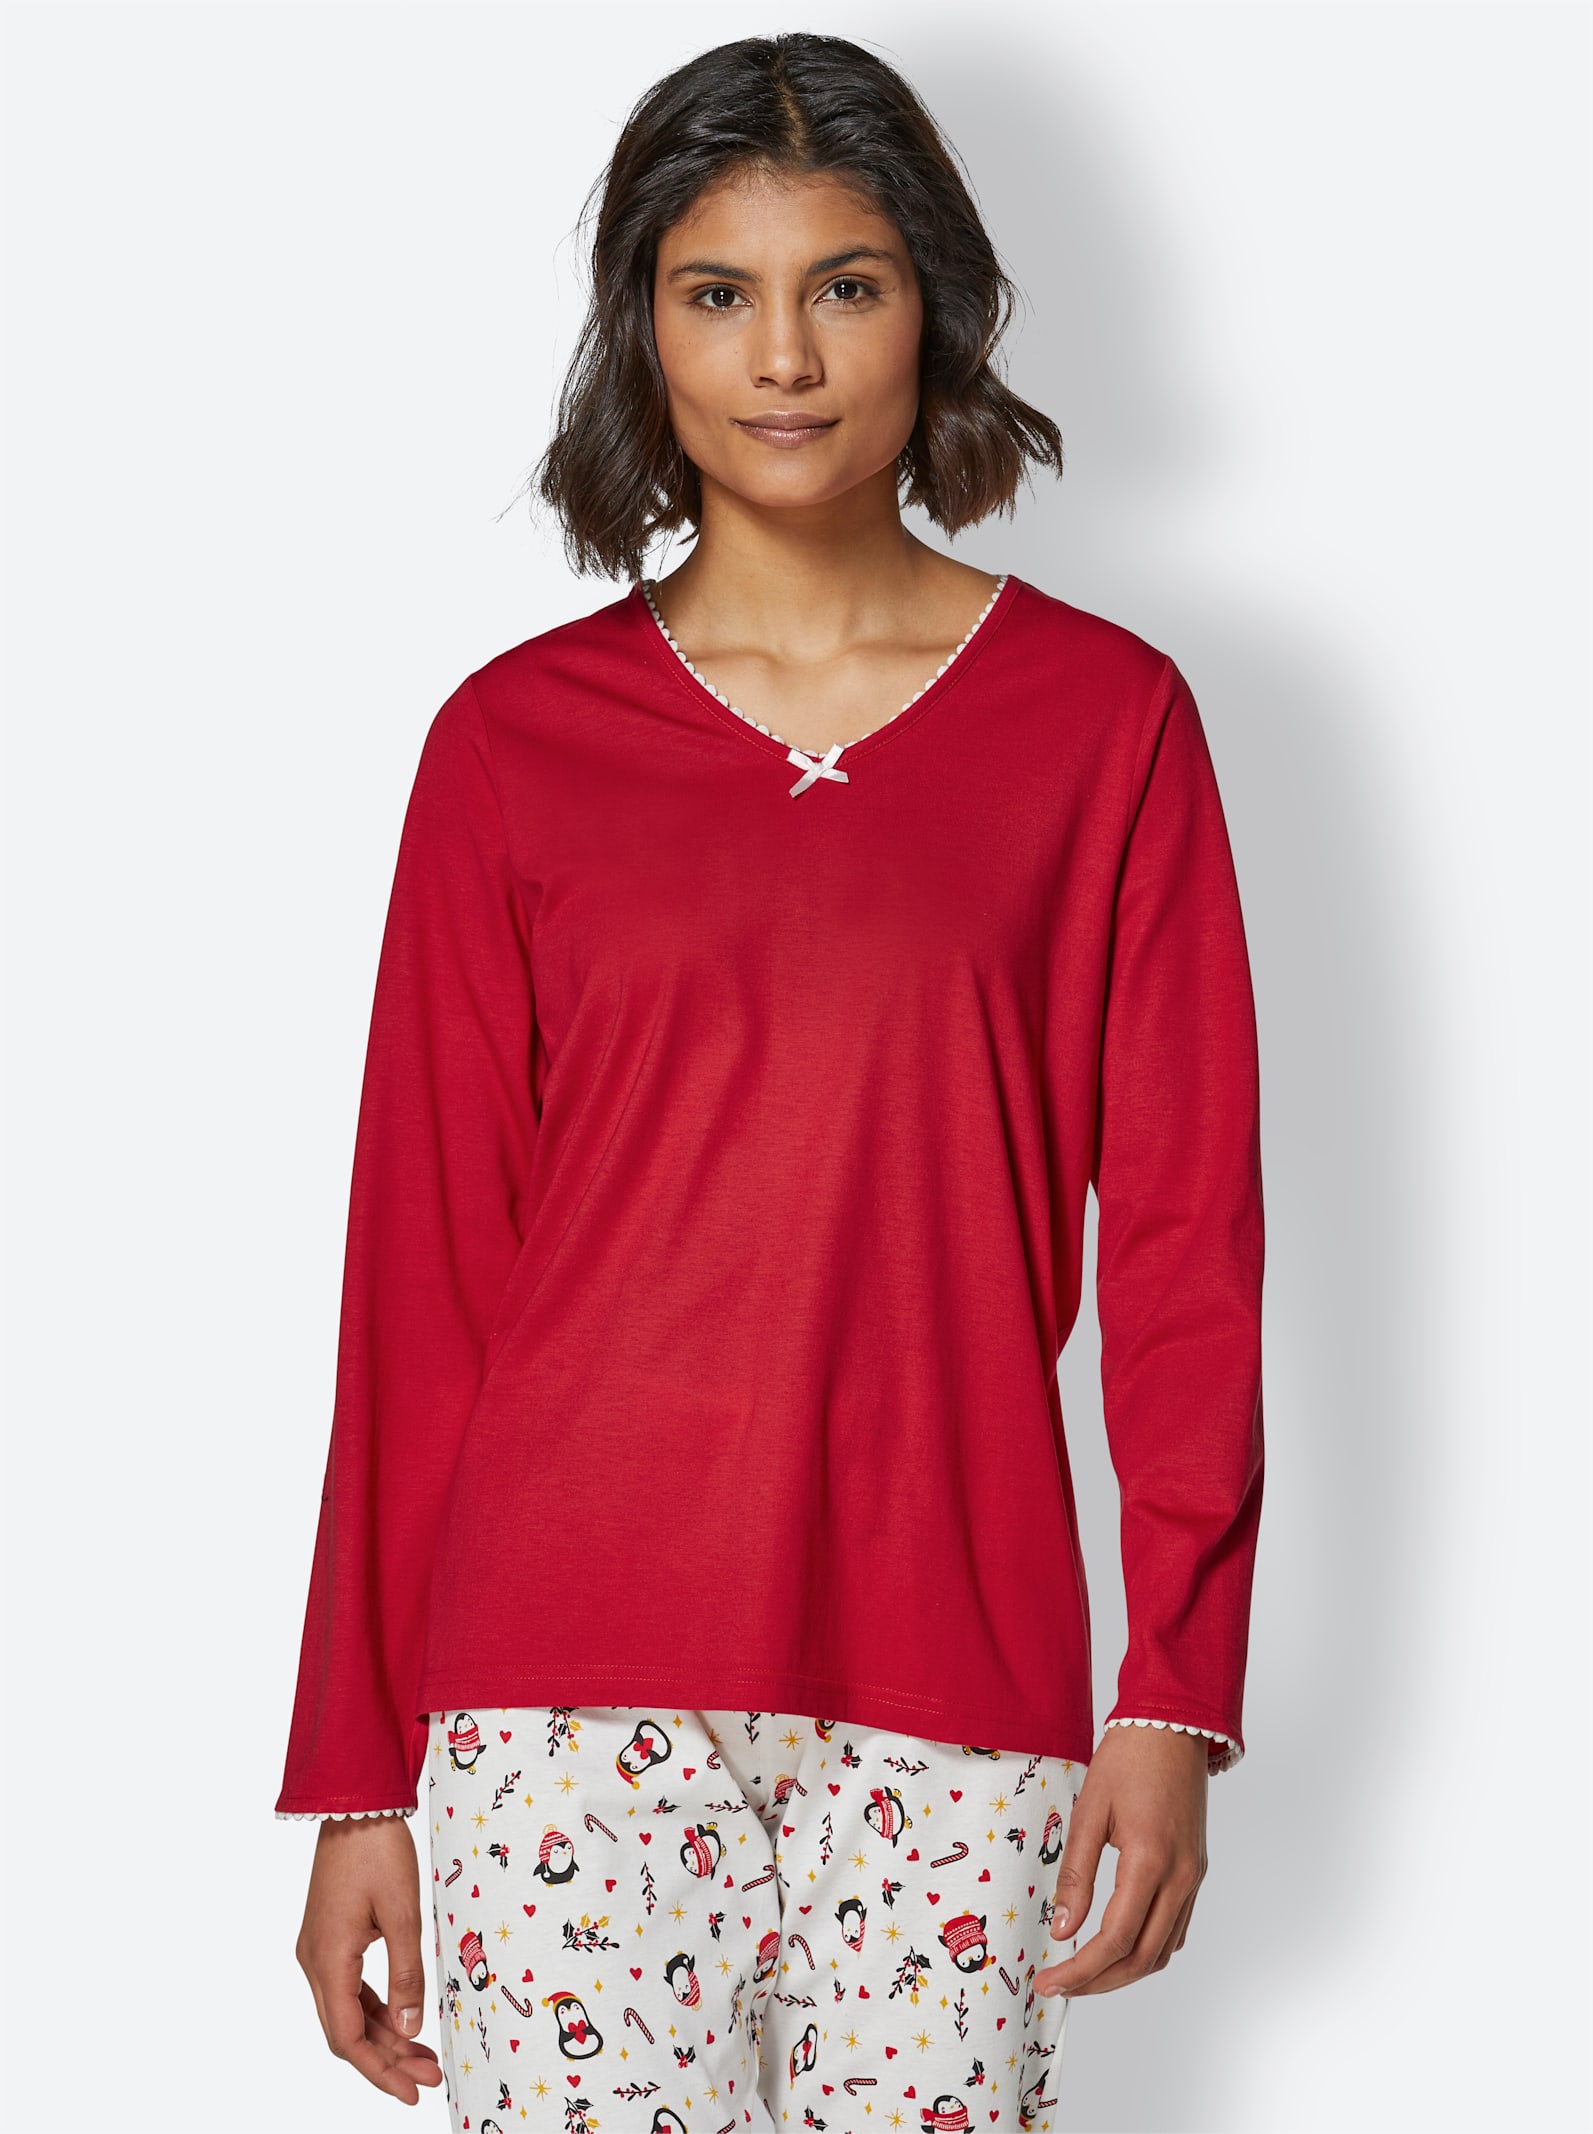 Pyjamastopp - röd